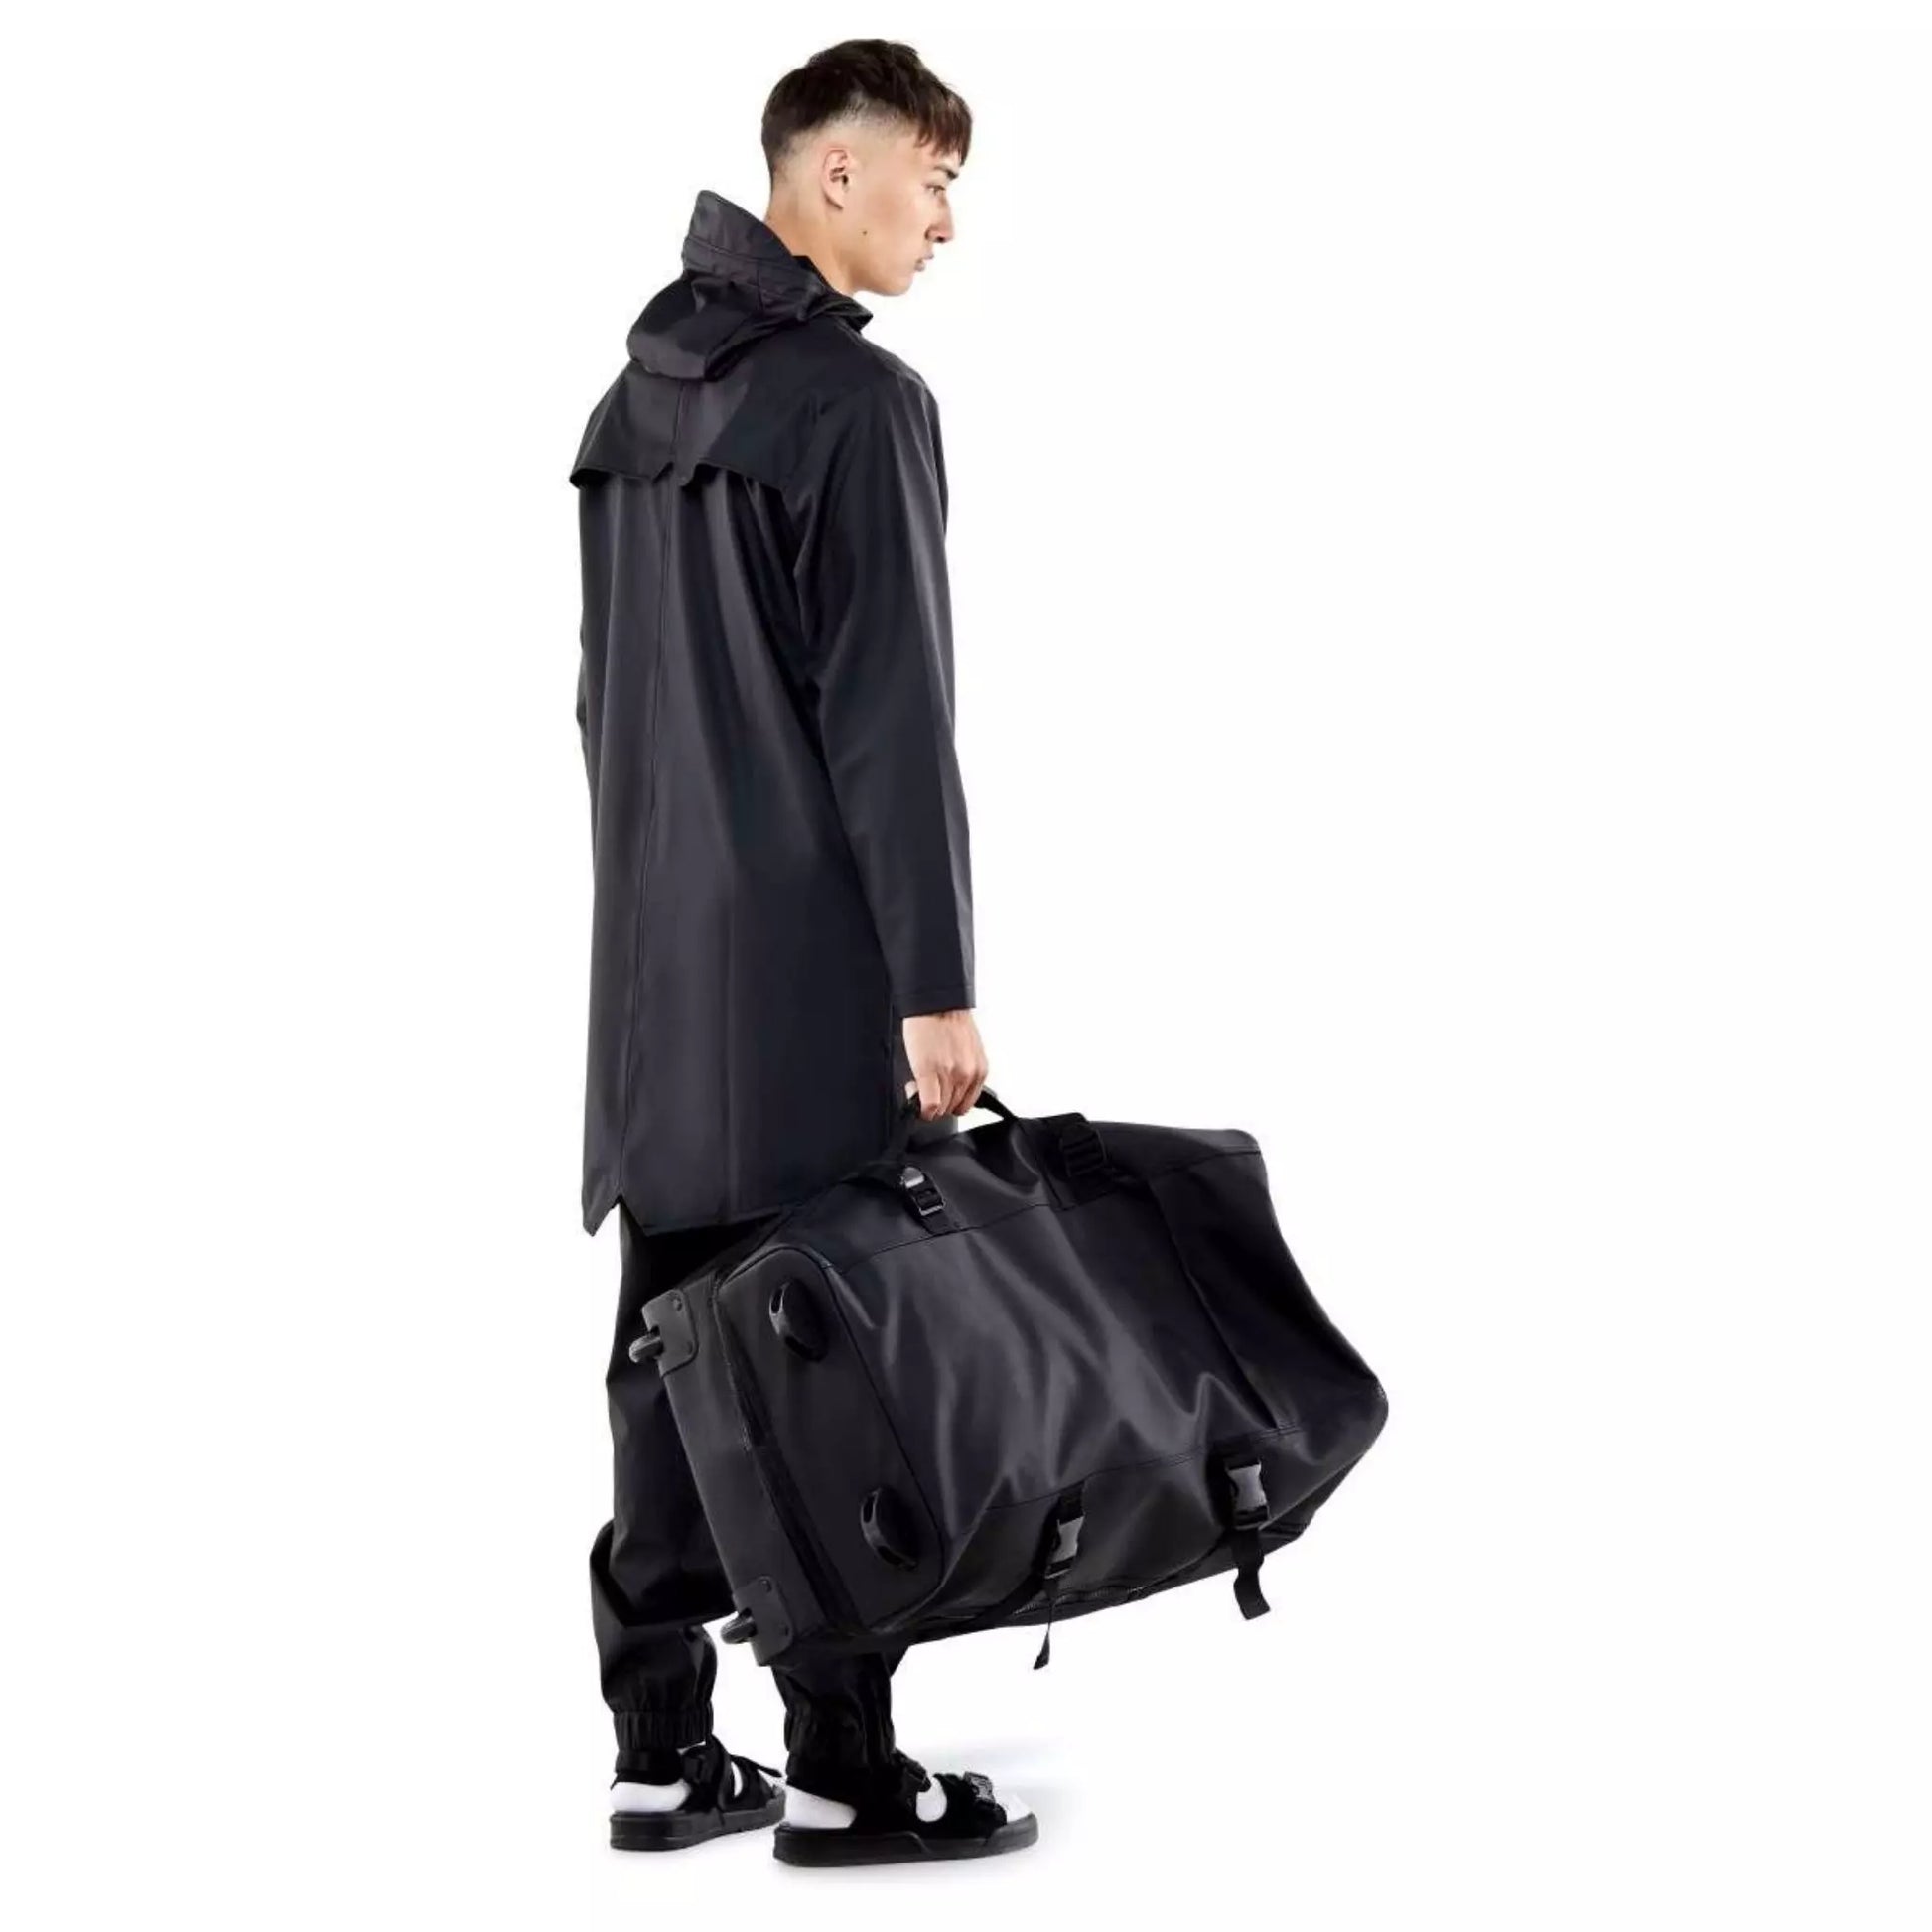 Rains waterproof travel bag large black held by a man